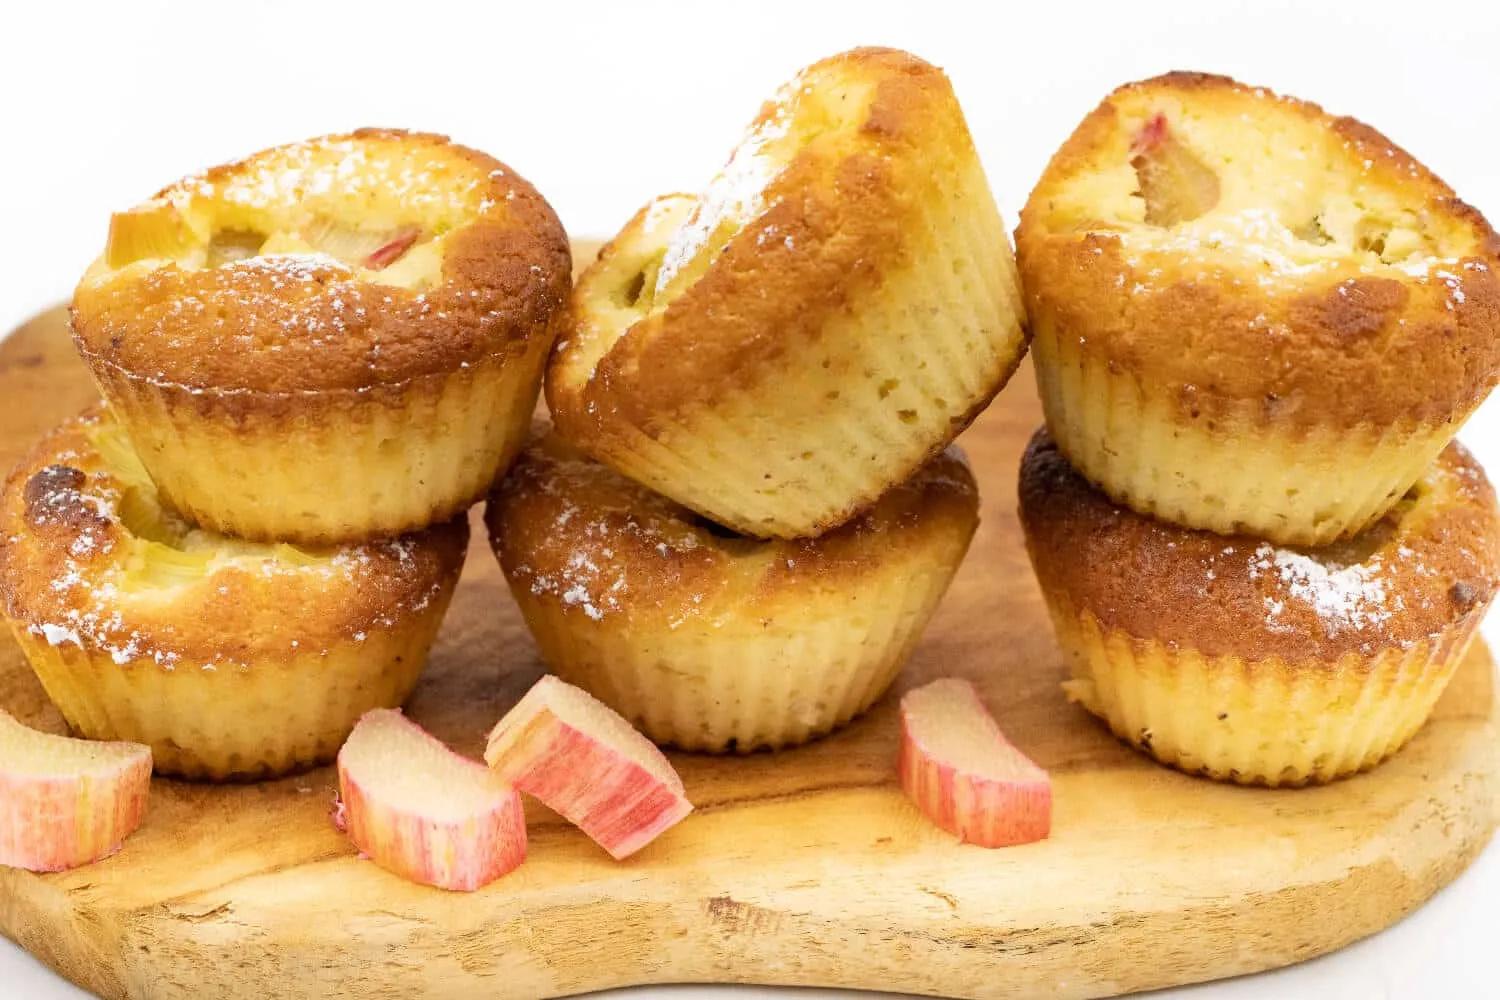 Rhabarber Muffins ohne Zucker - Staupitopia Zuckerfrei